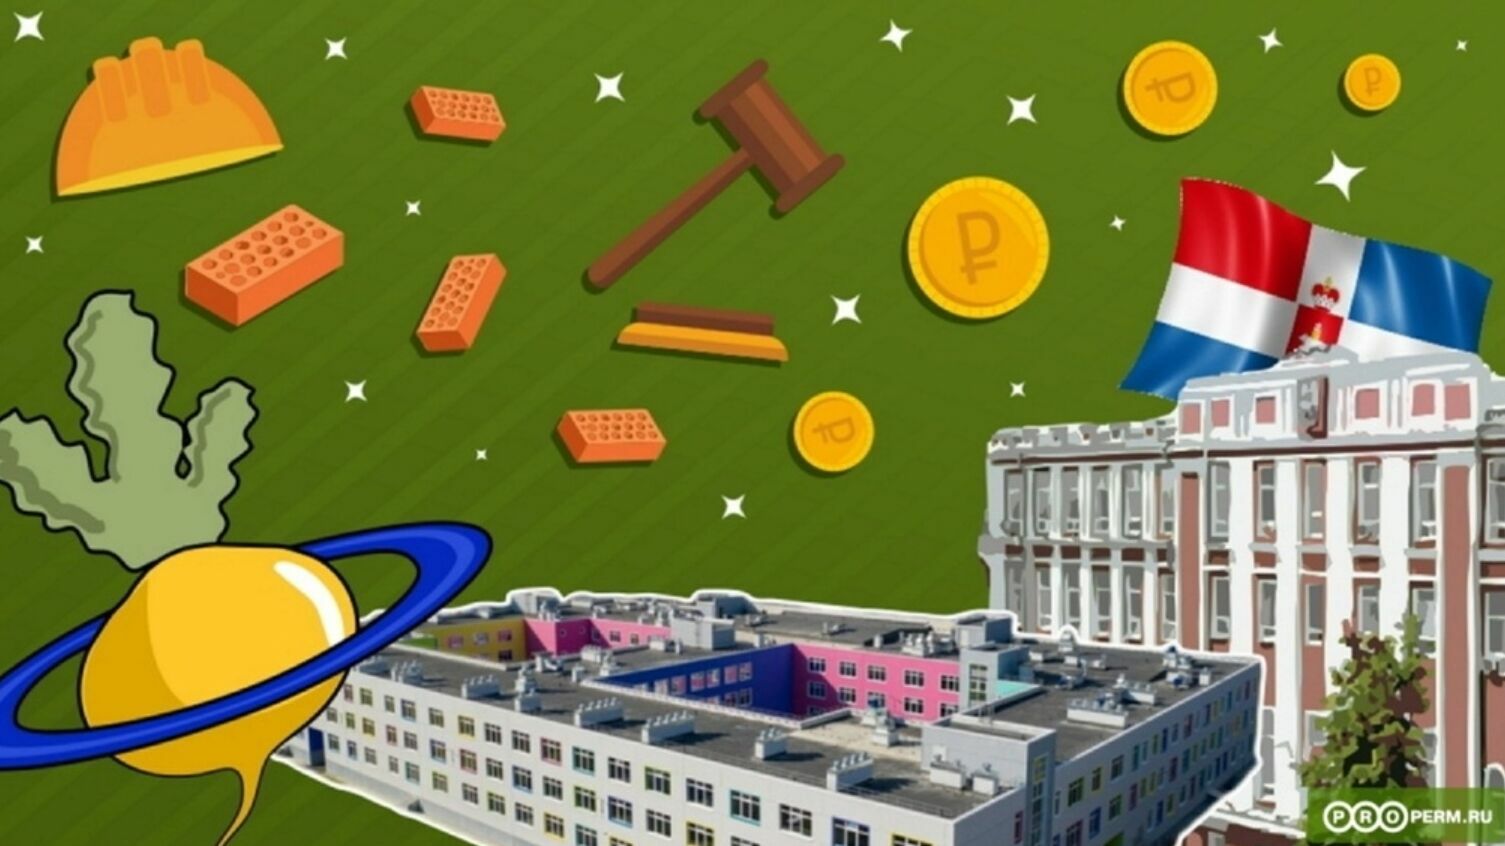 За миллион или за рубль? Тест о скандальной школе в ЖК «Арсенал», за которую судились власти и «Сатурн-Р»